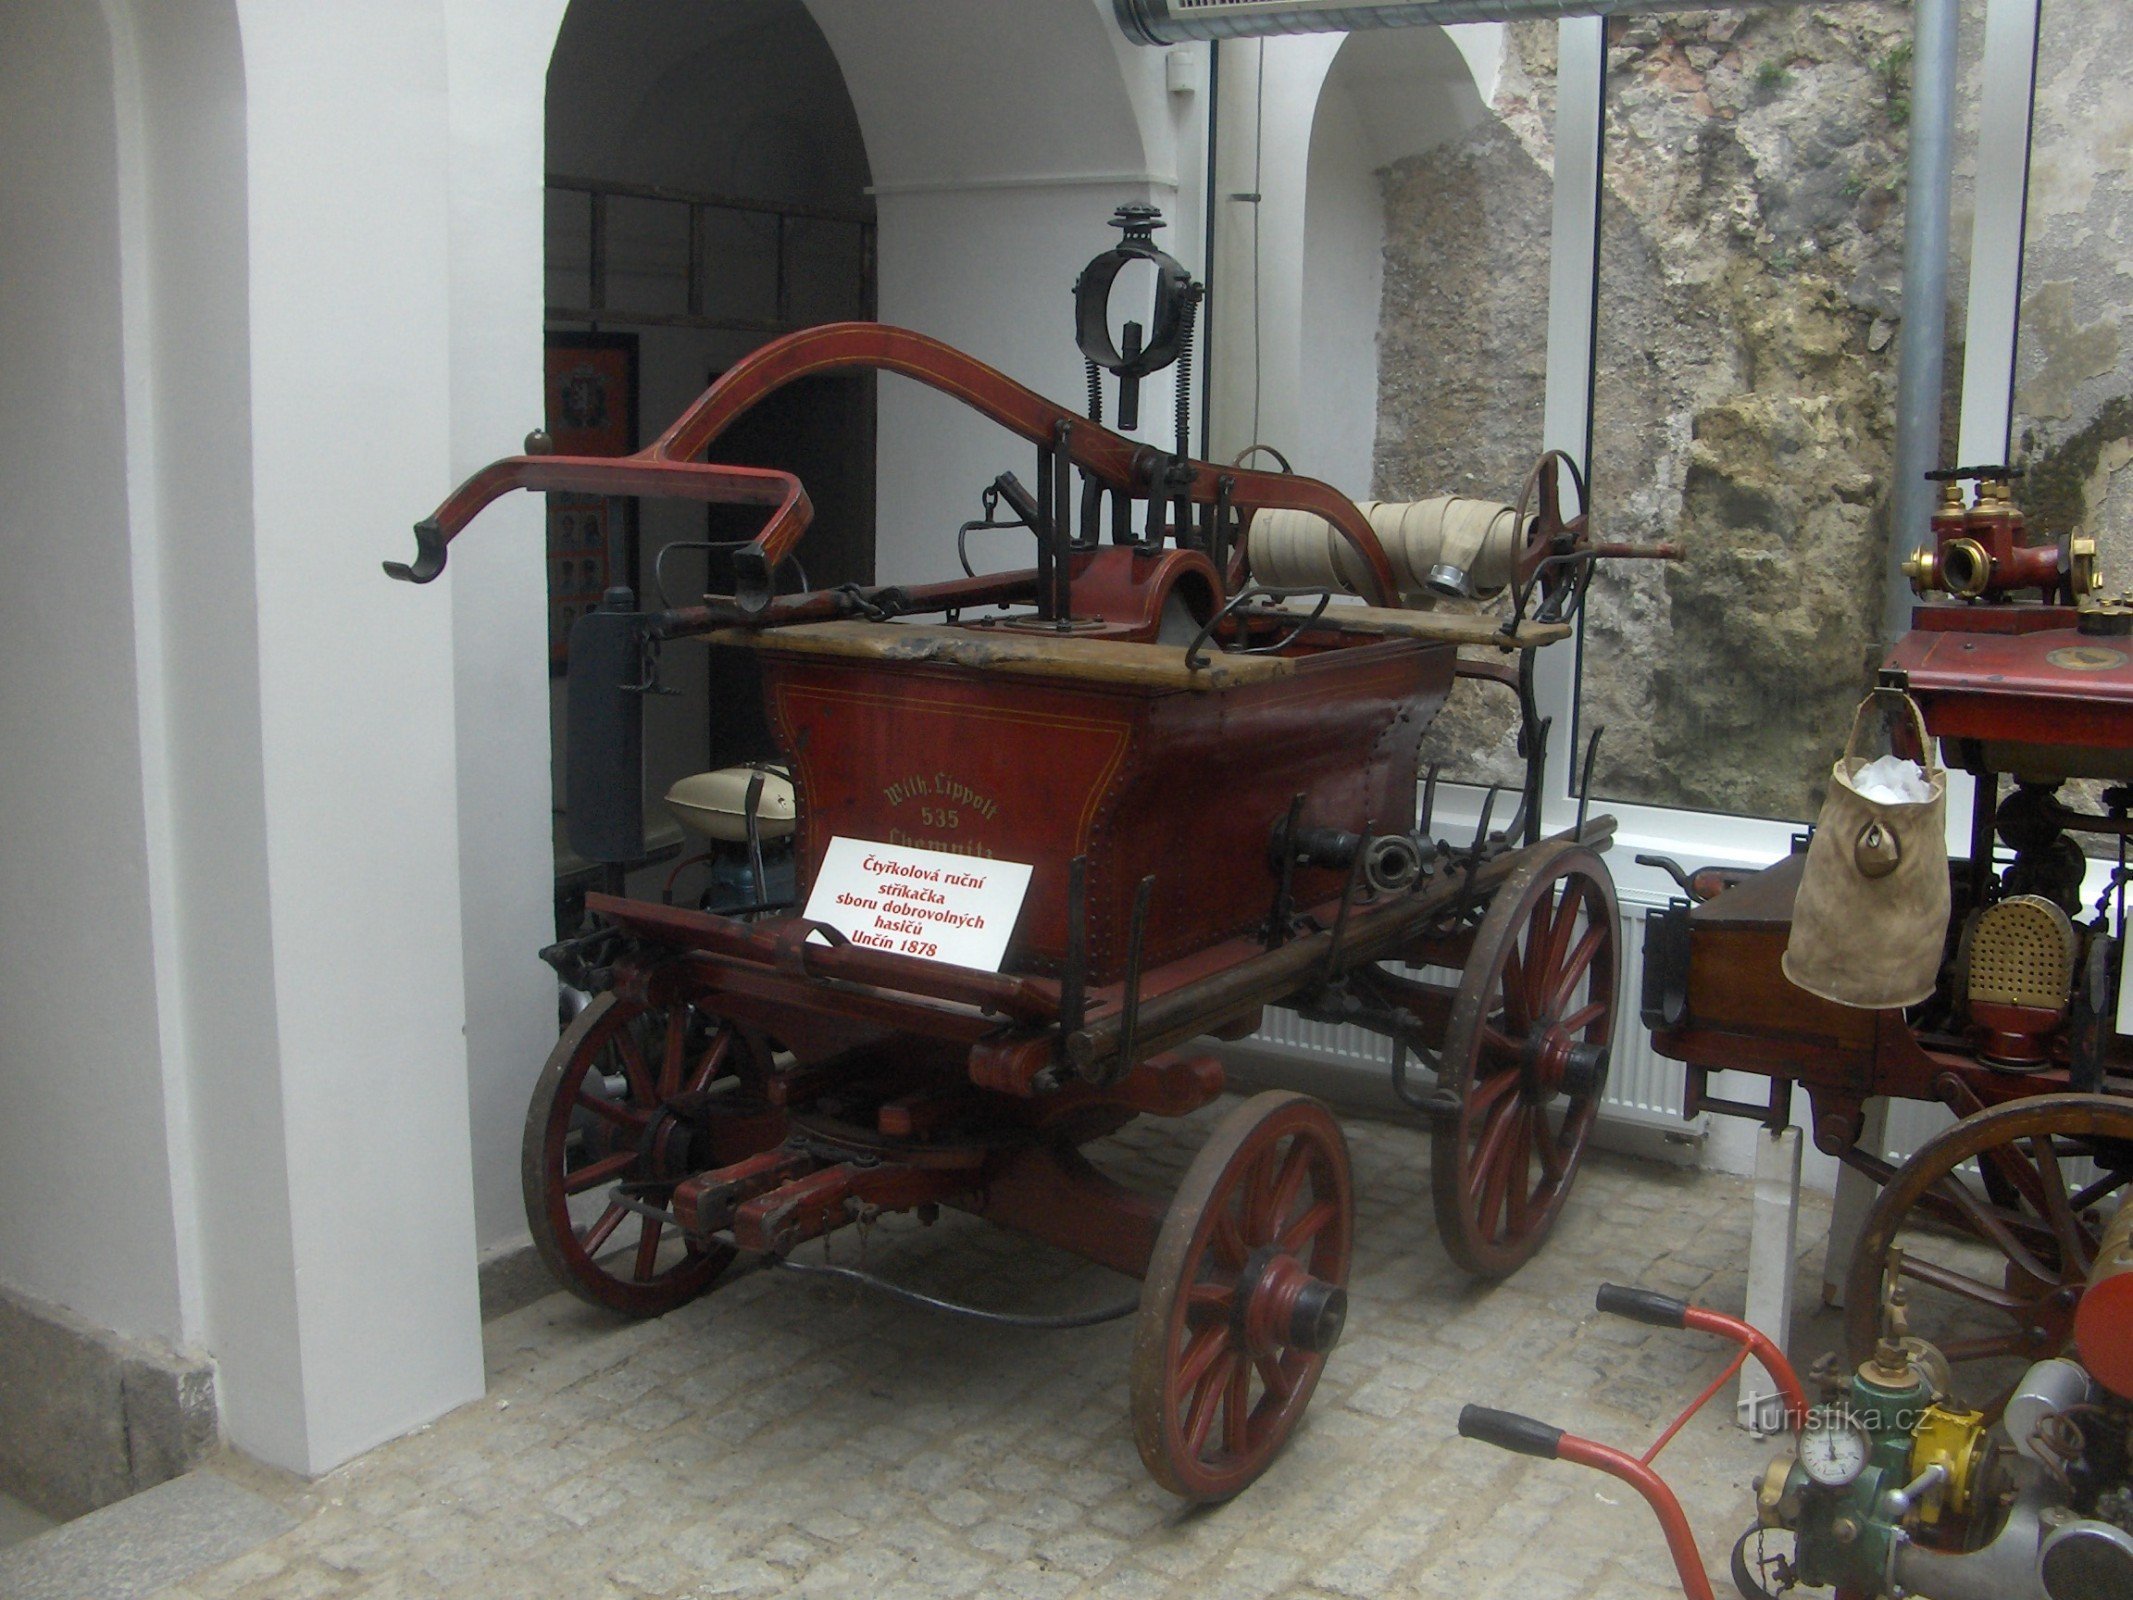 克鲁普卡的消防员博物馆。